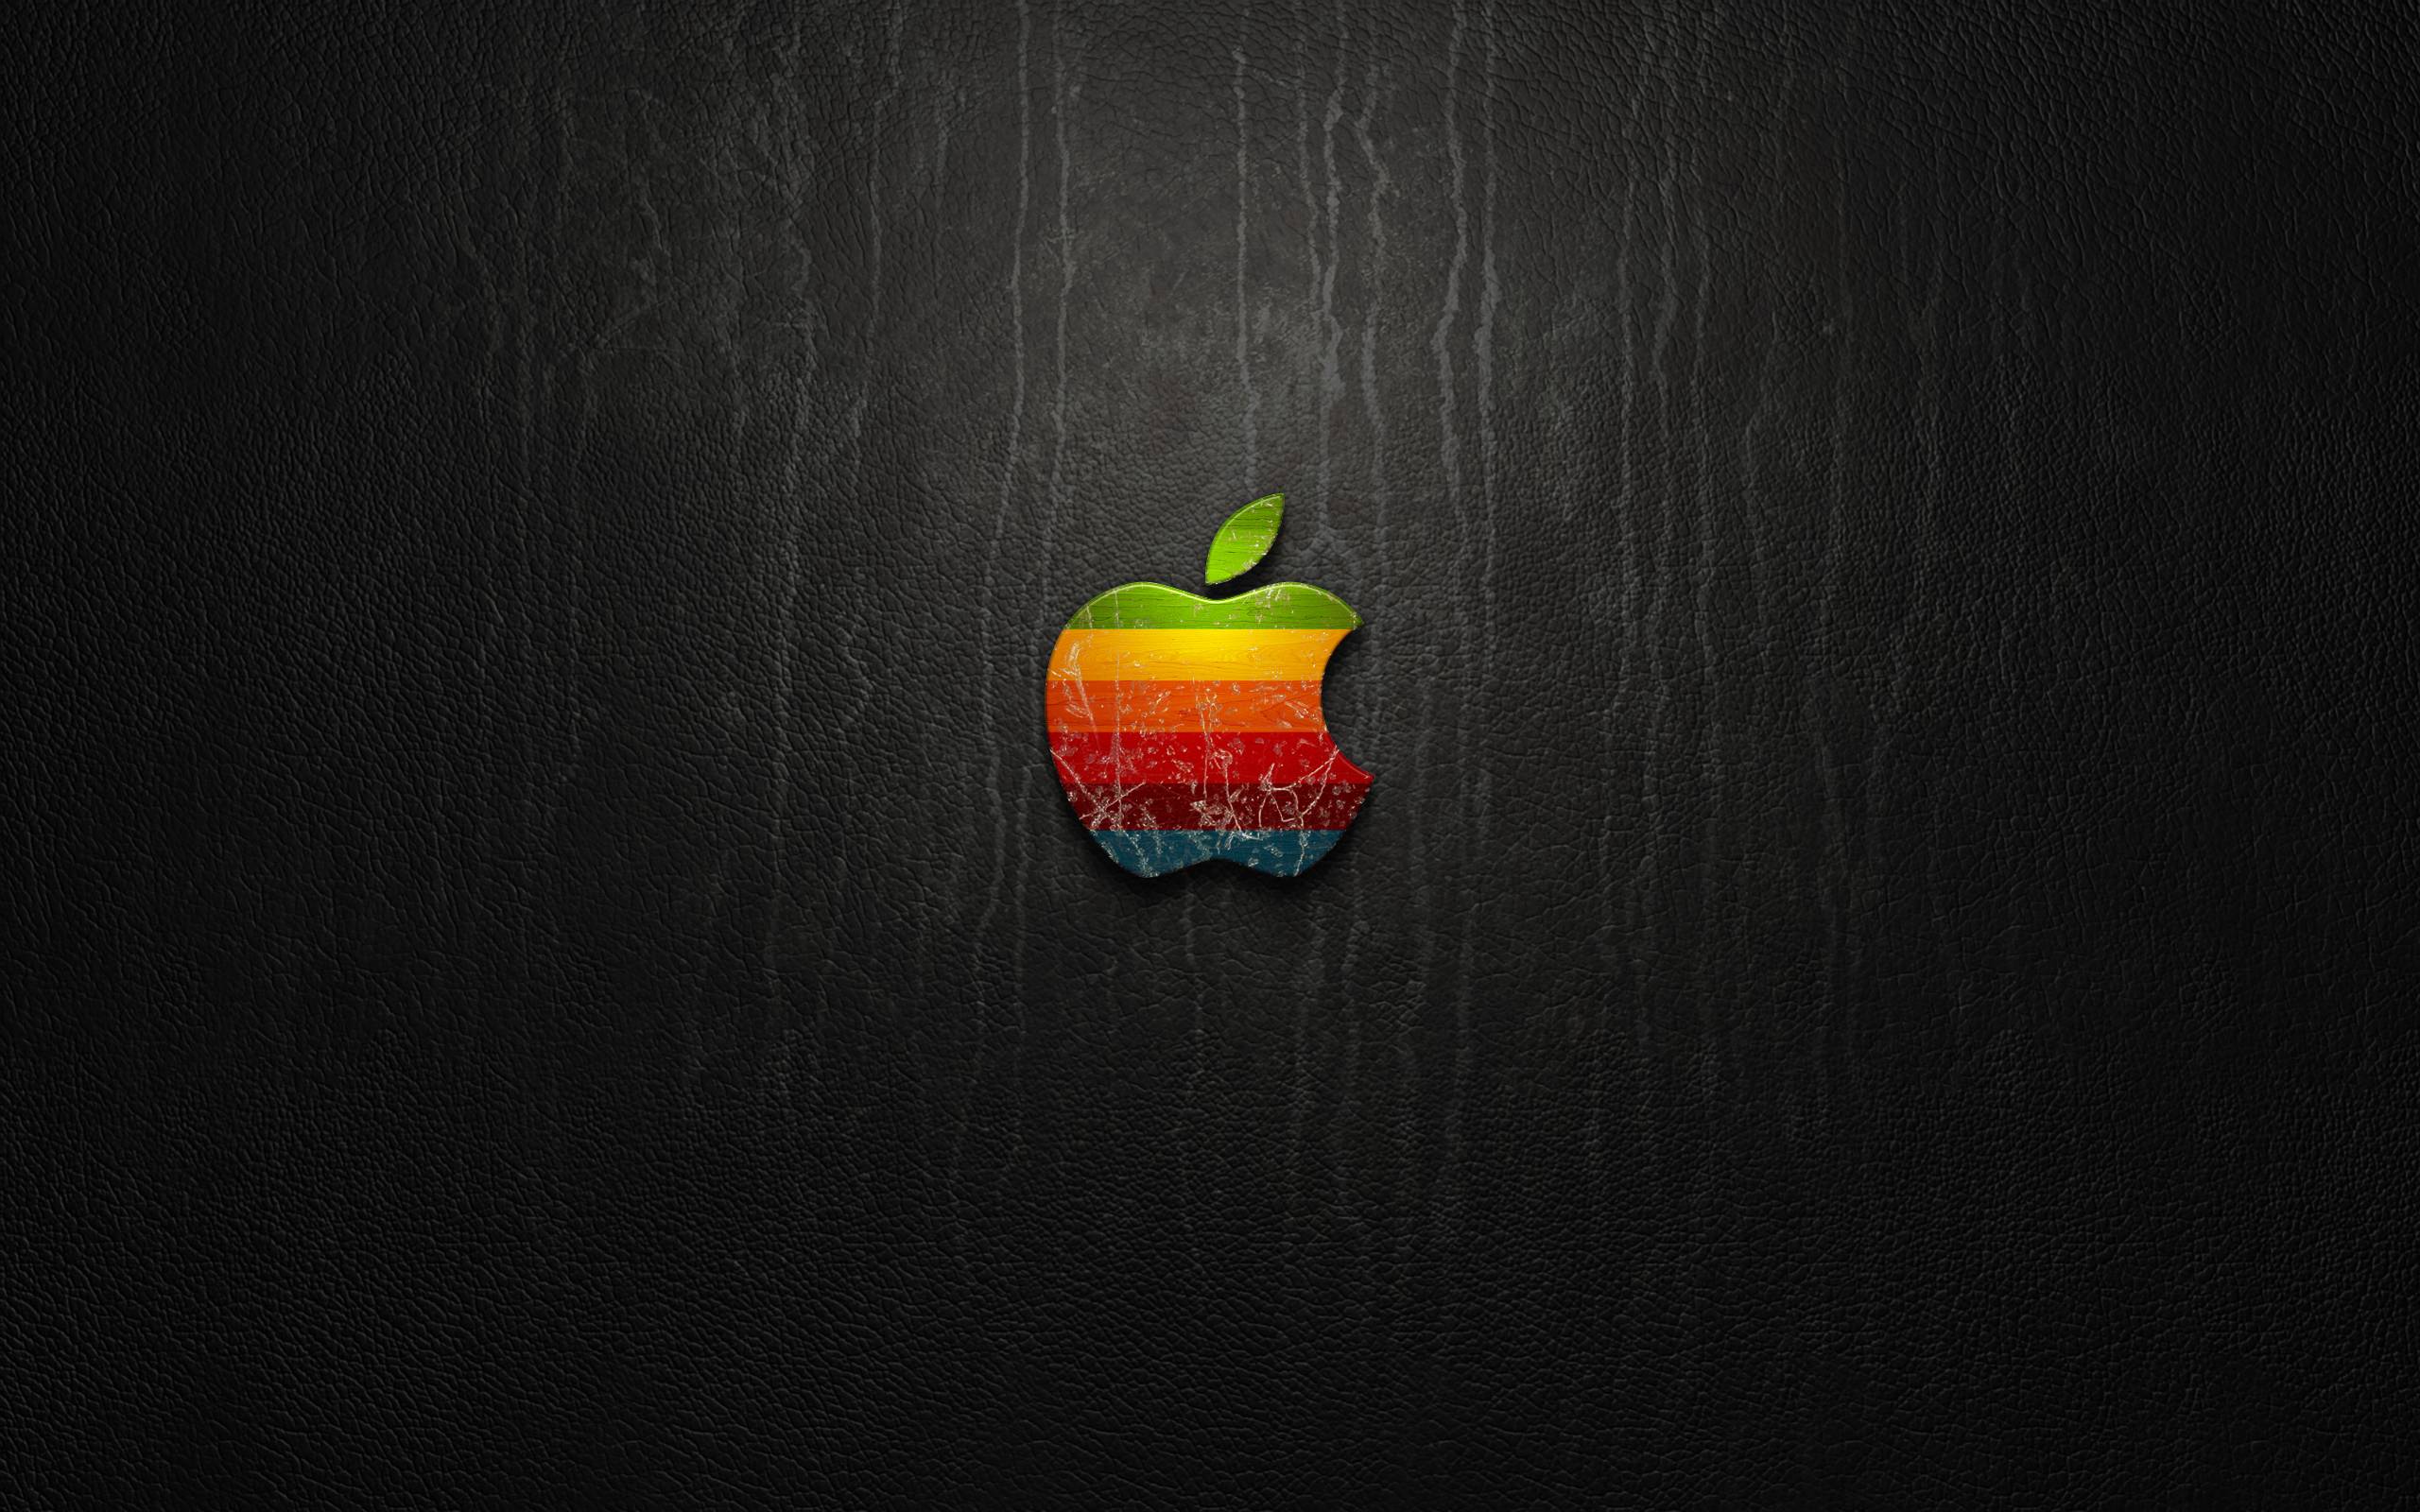 Apple HD Wallpaper. Apple Logo Desktop Background